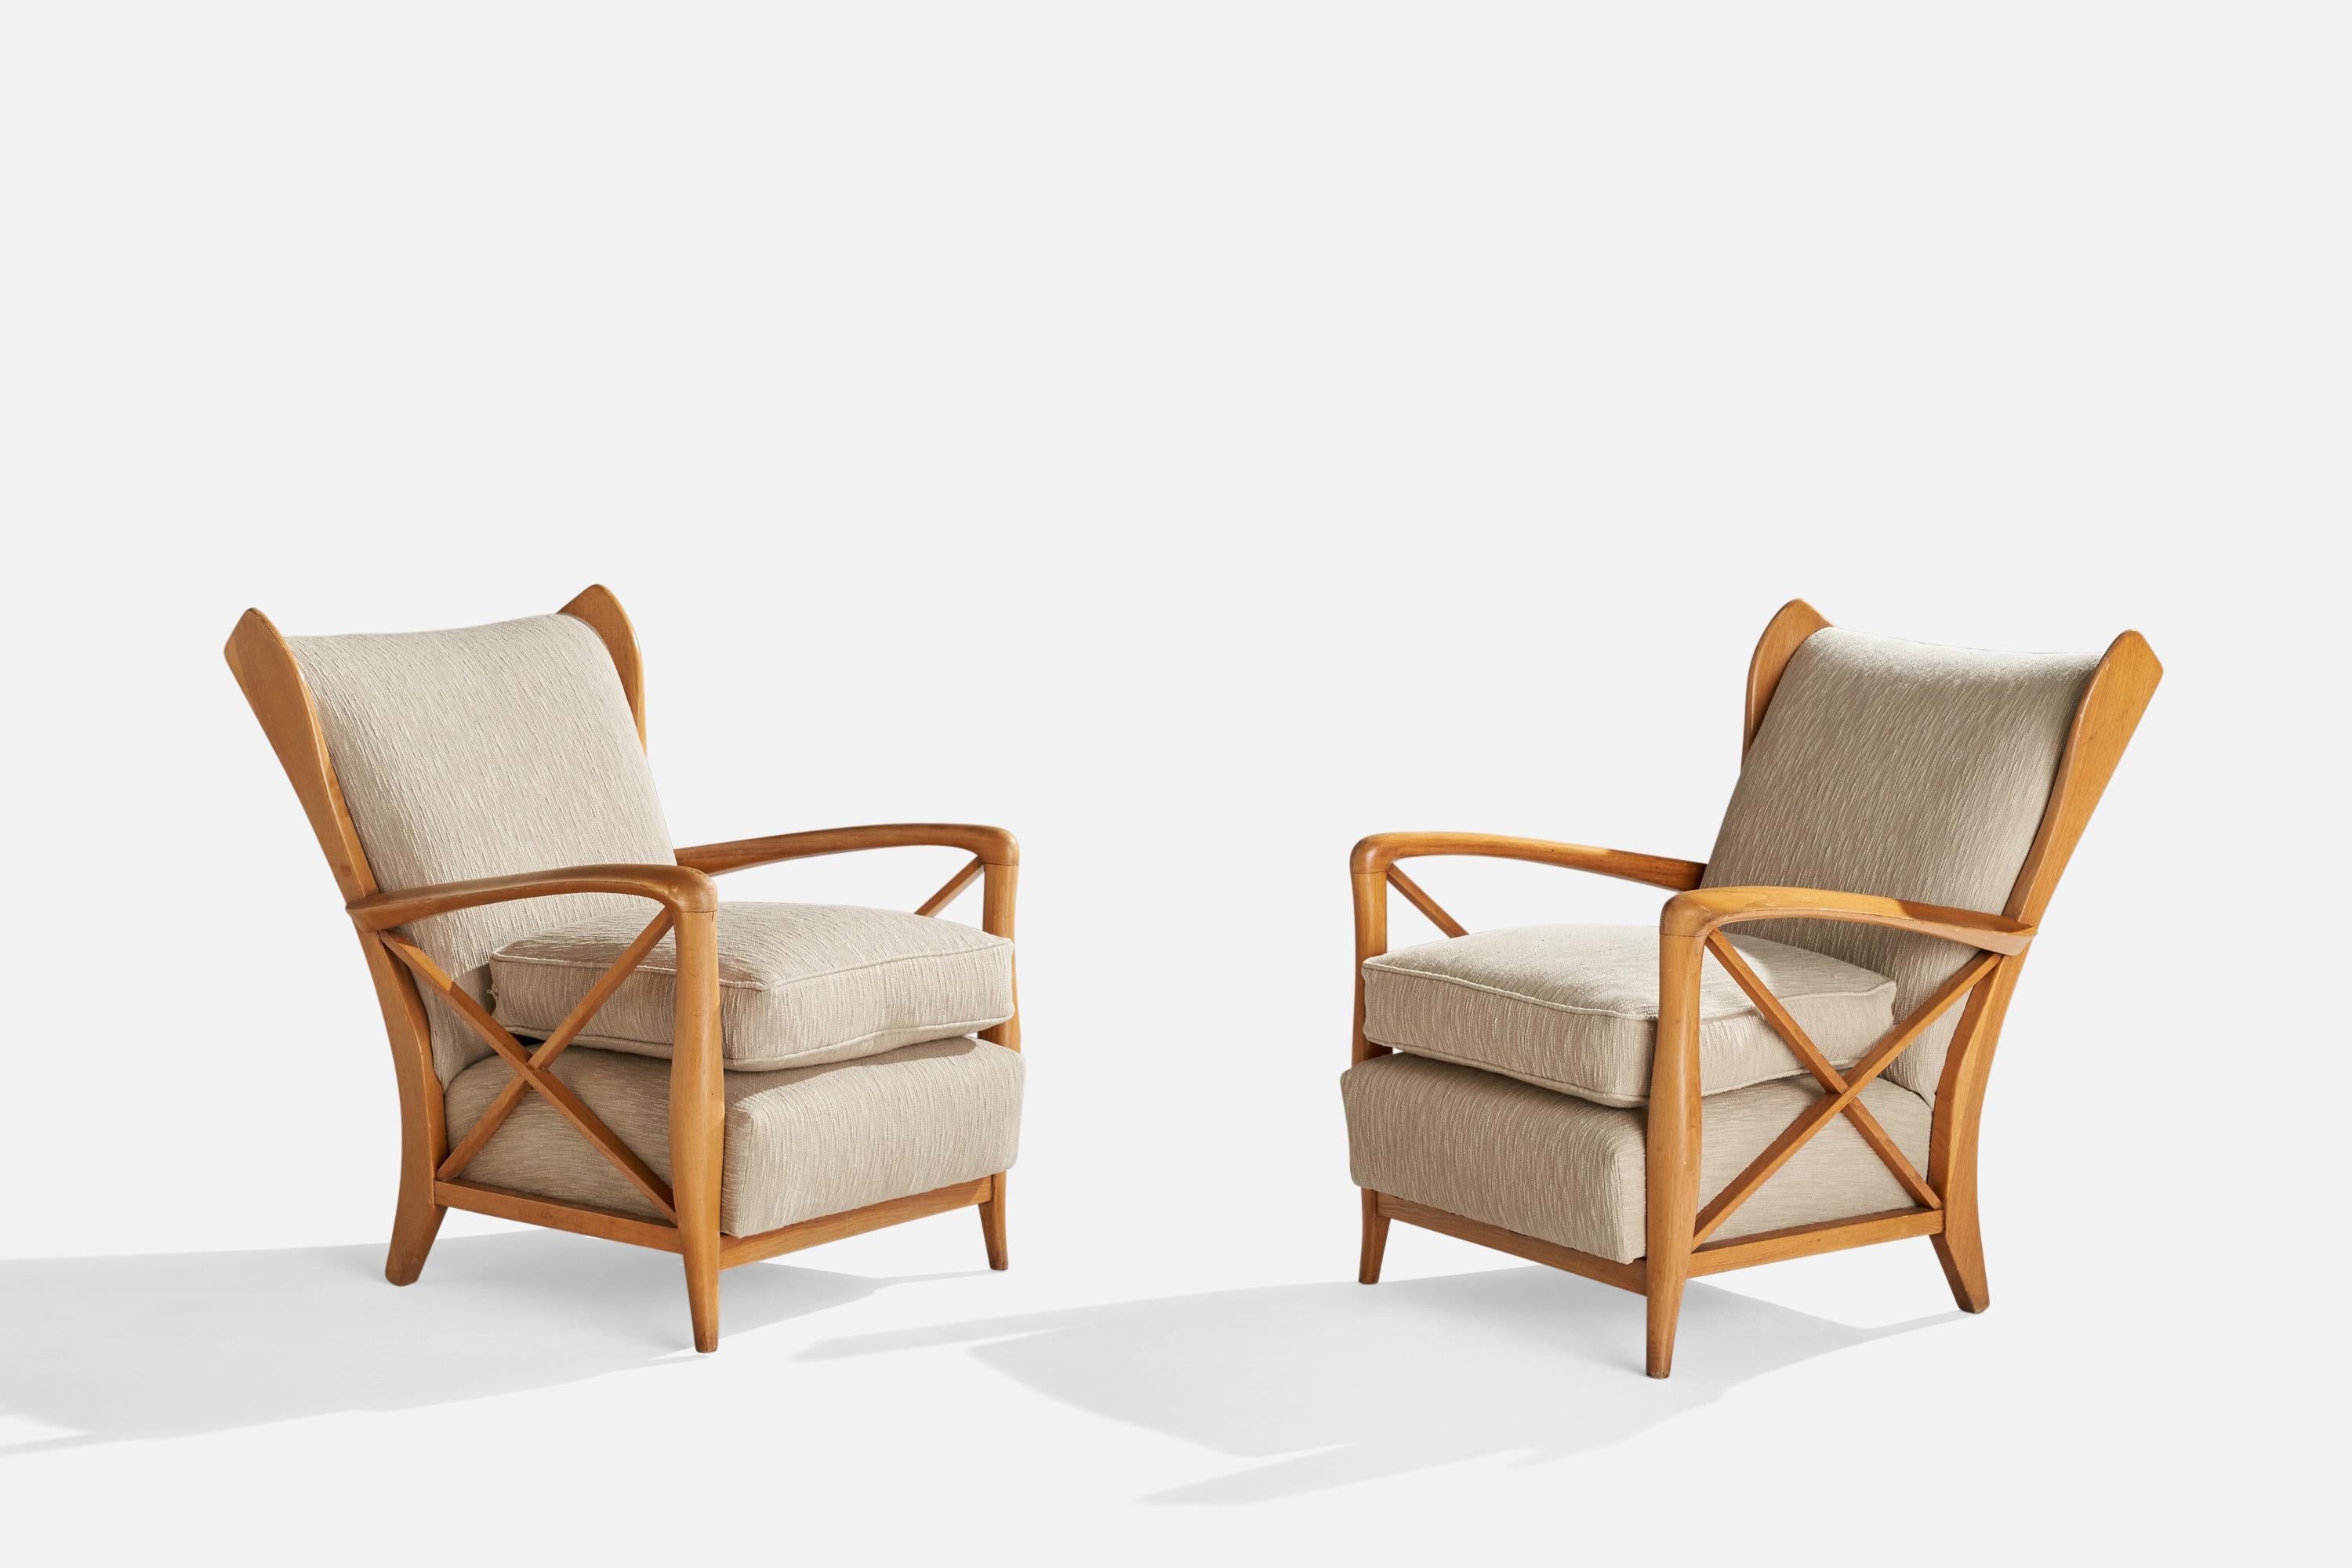 Paire de grandes chaises de salon en chêne et en tissu beige, conçues et produites en Italie dans les années 1940.

Hauteur du siège 18.5